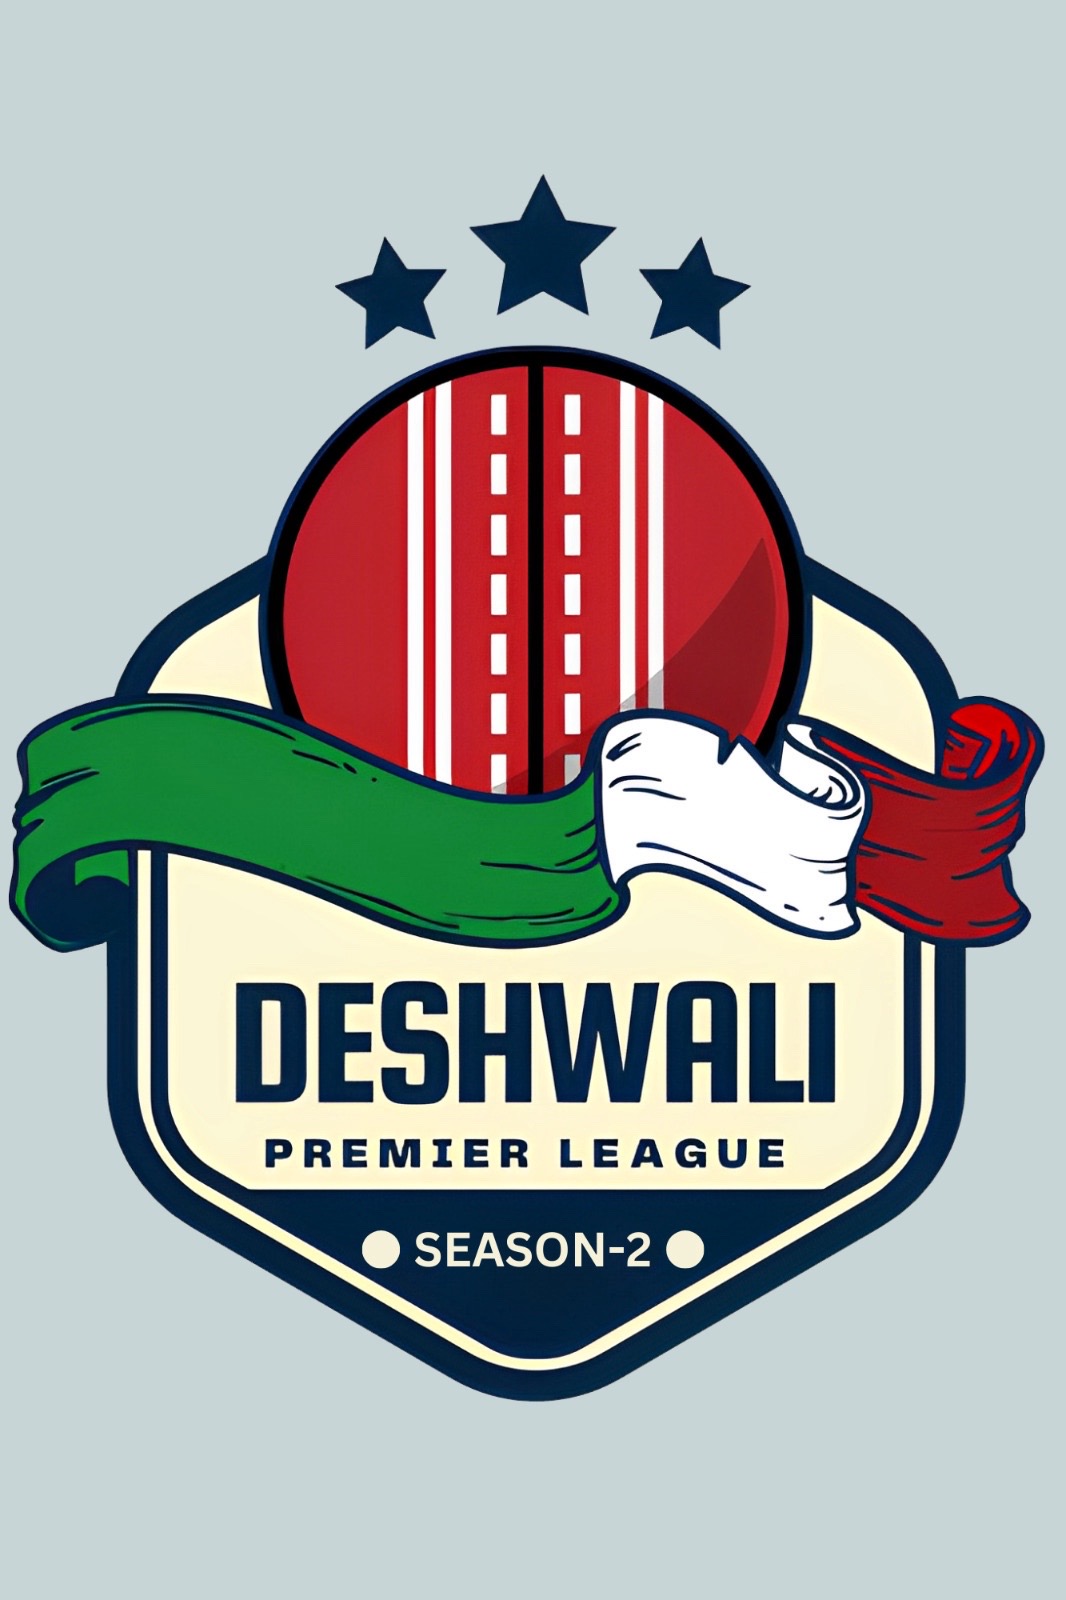 Deshwali Premier League Season 2